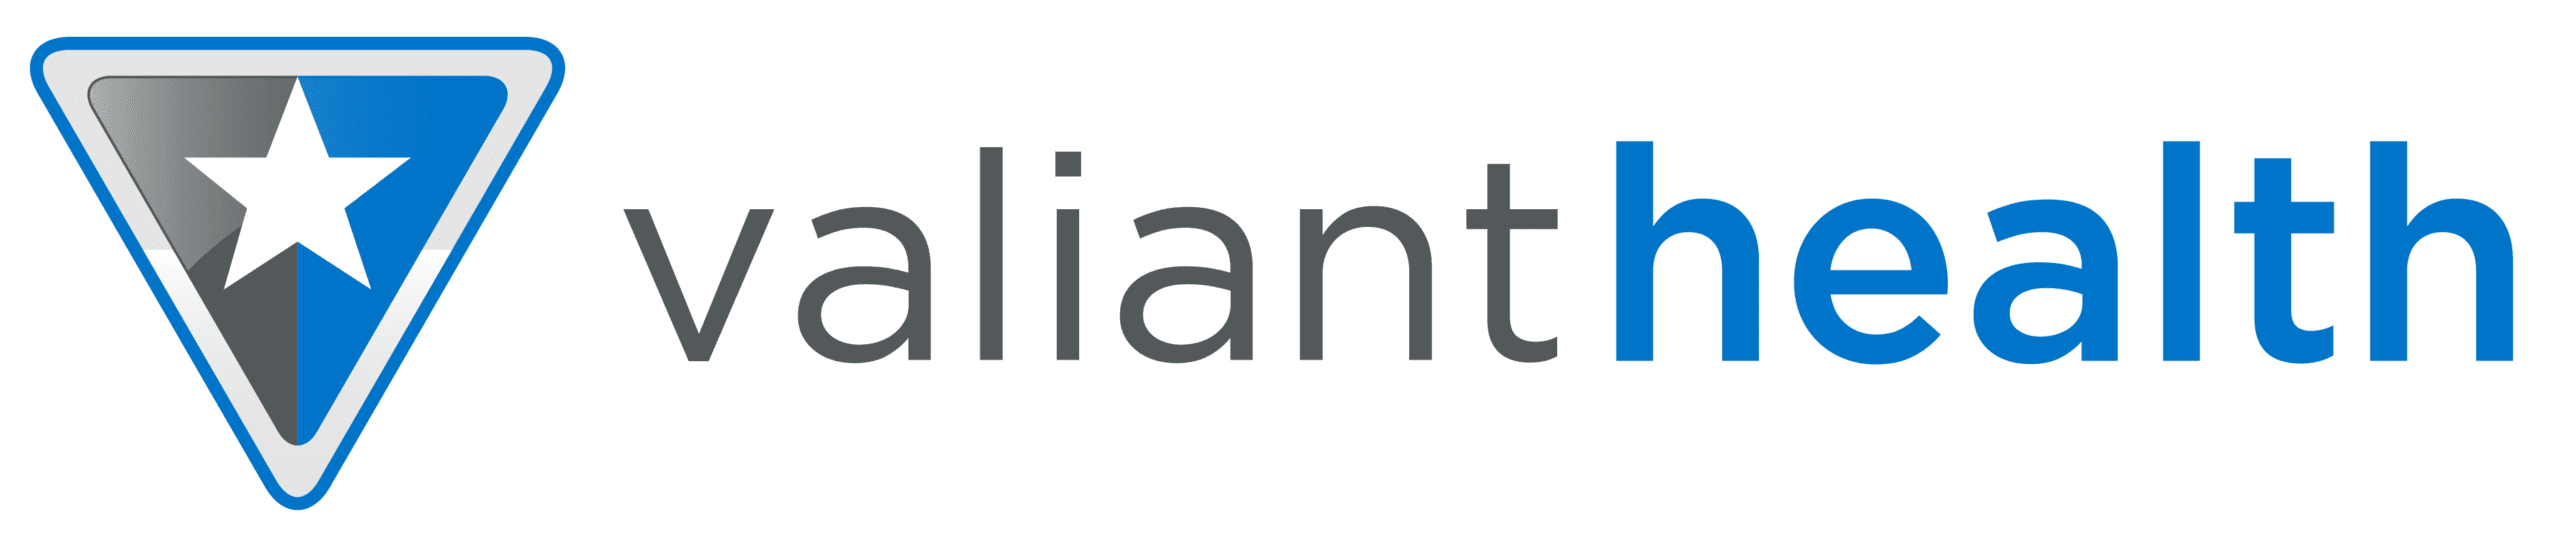 Valiant Health Healthcare Technology Logo